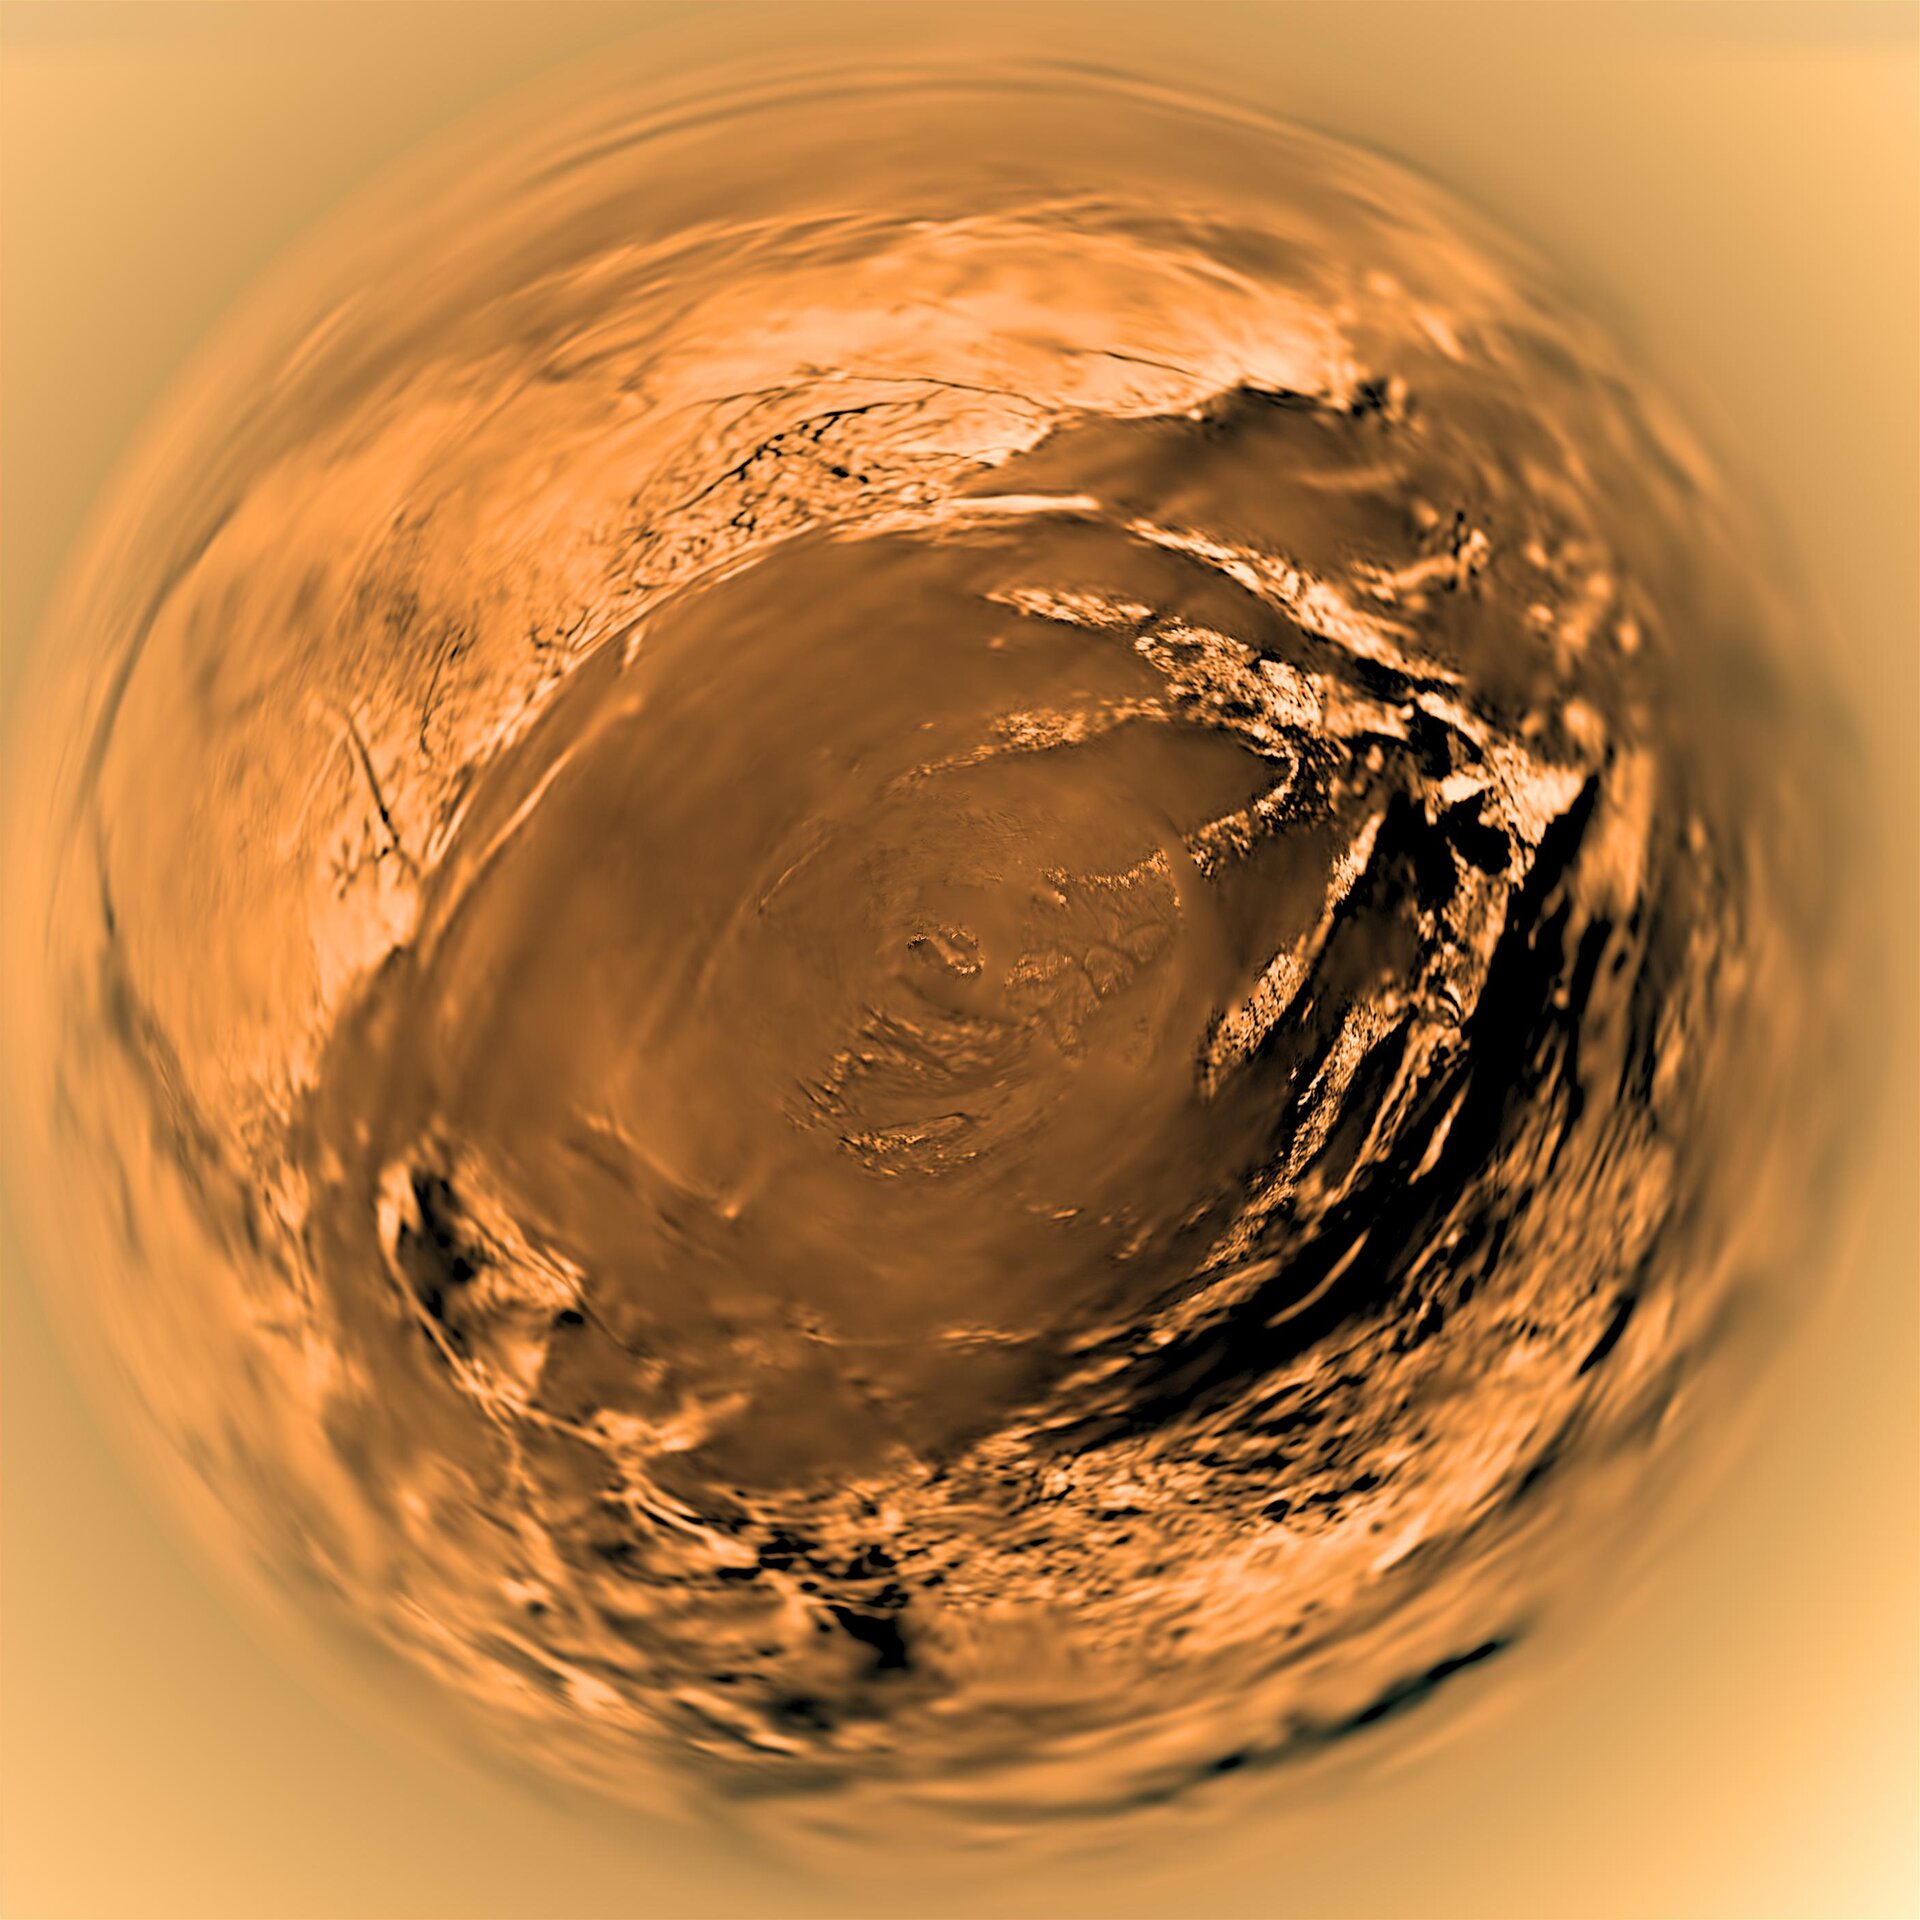 Vue fisheye de Titan par Huygens le 14 janvier 2005